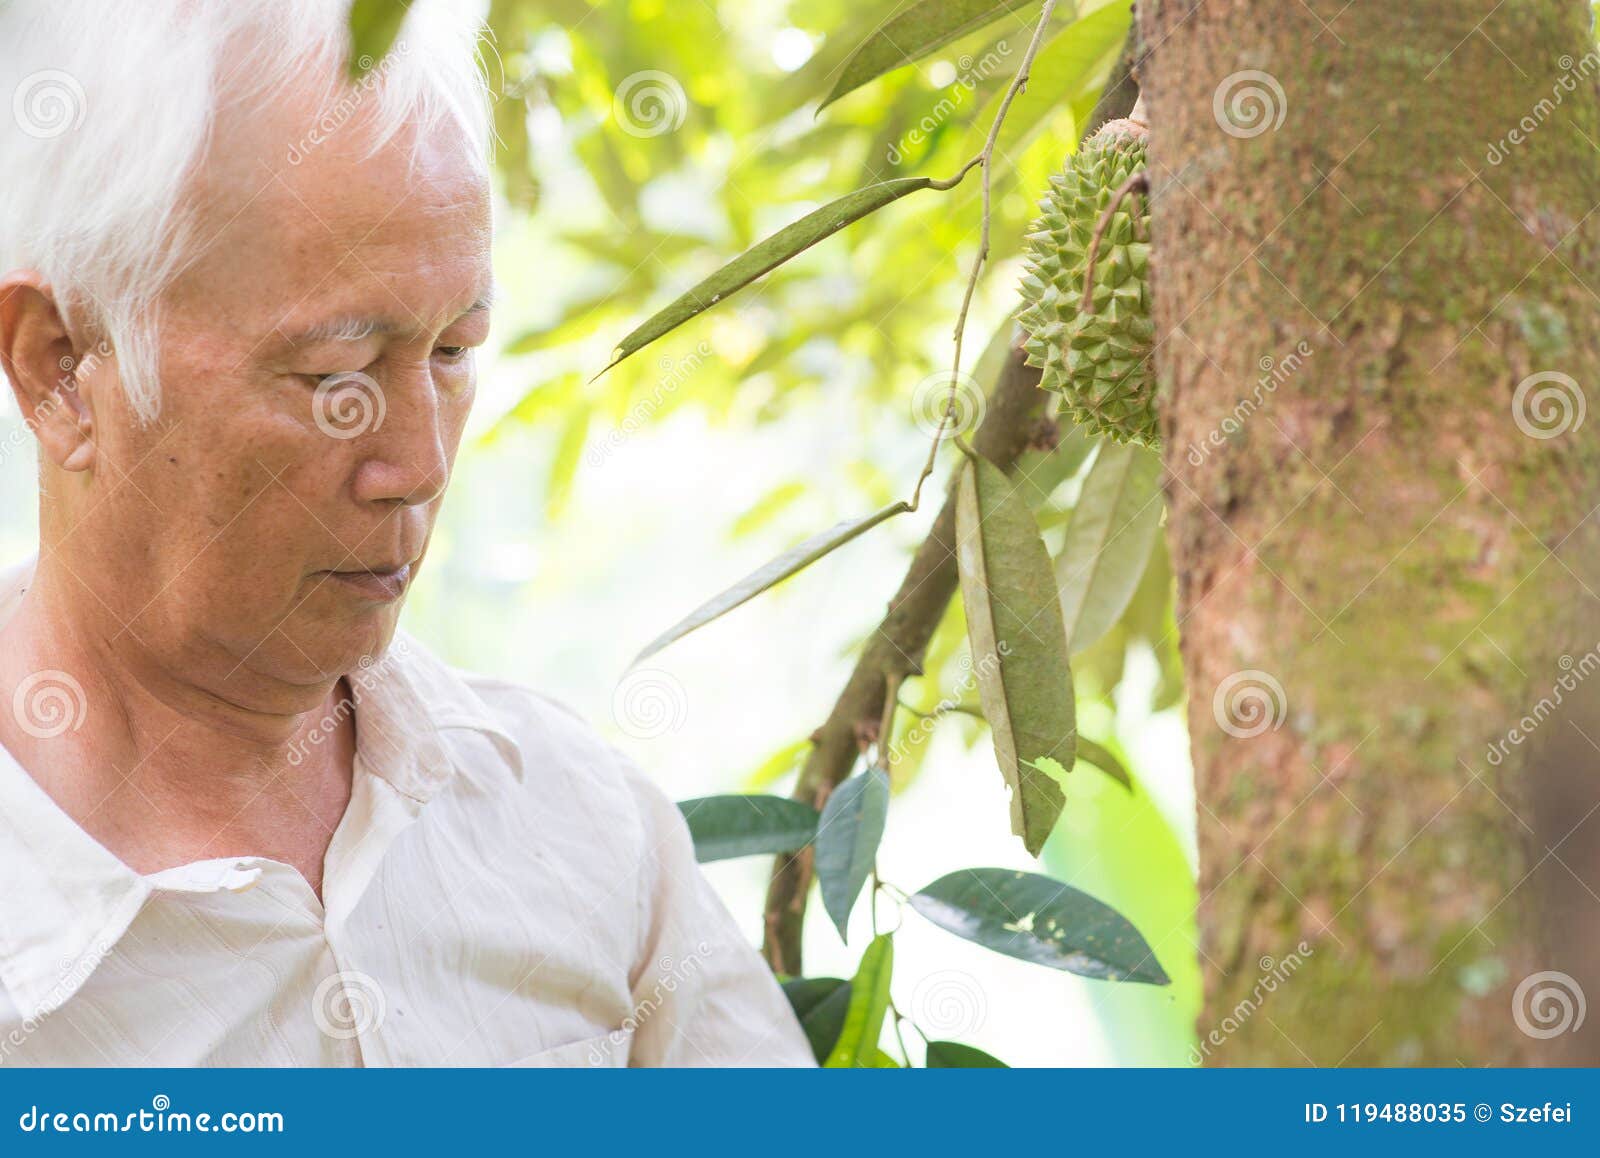 Pracownika i durian drzewo. Azjata rolny właściciel sprawdza na durian drzewie w sadzie